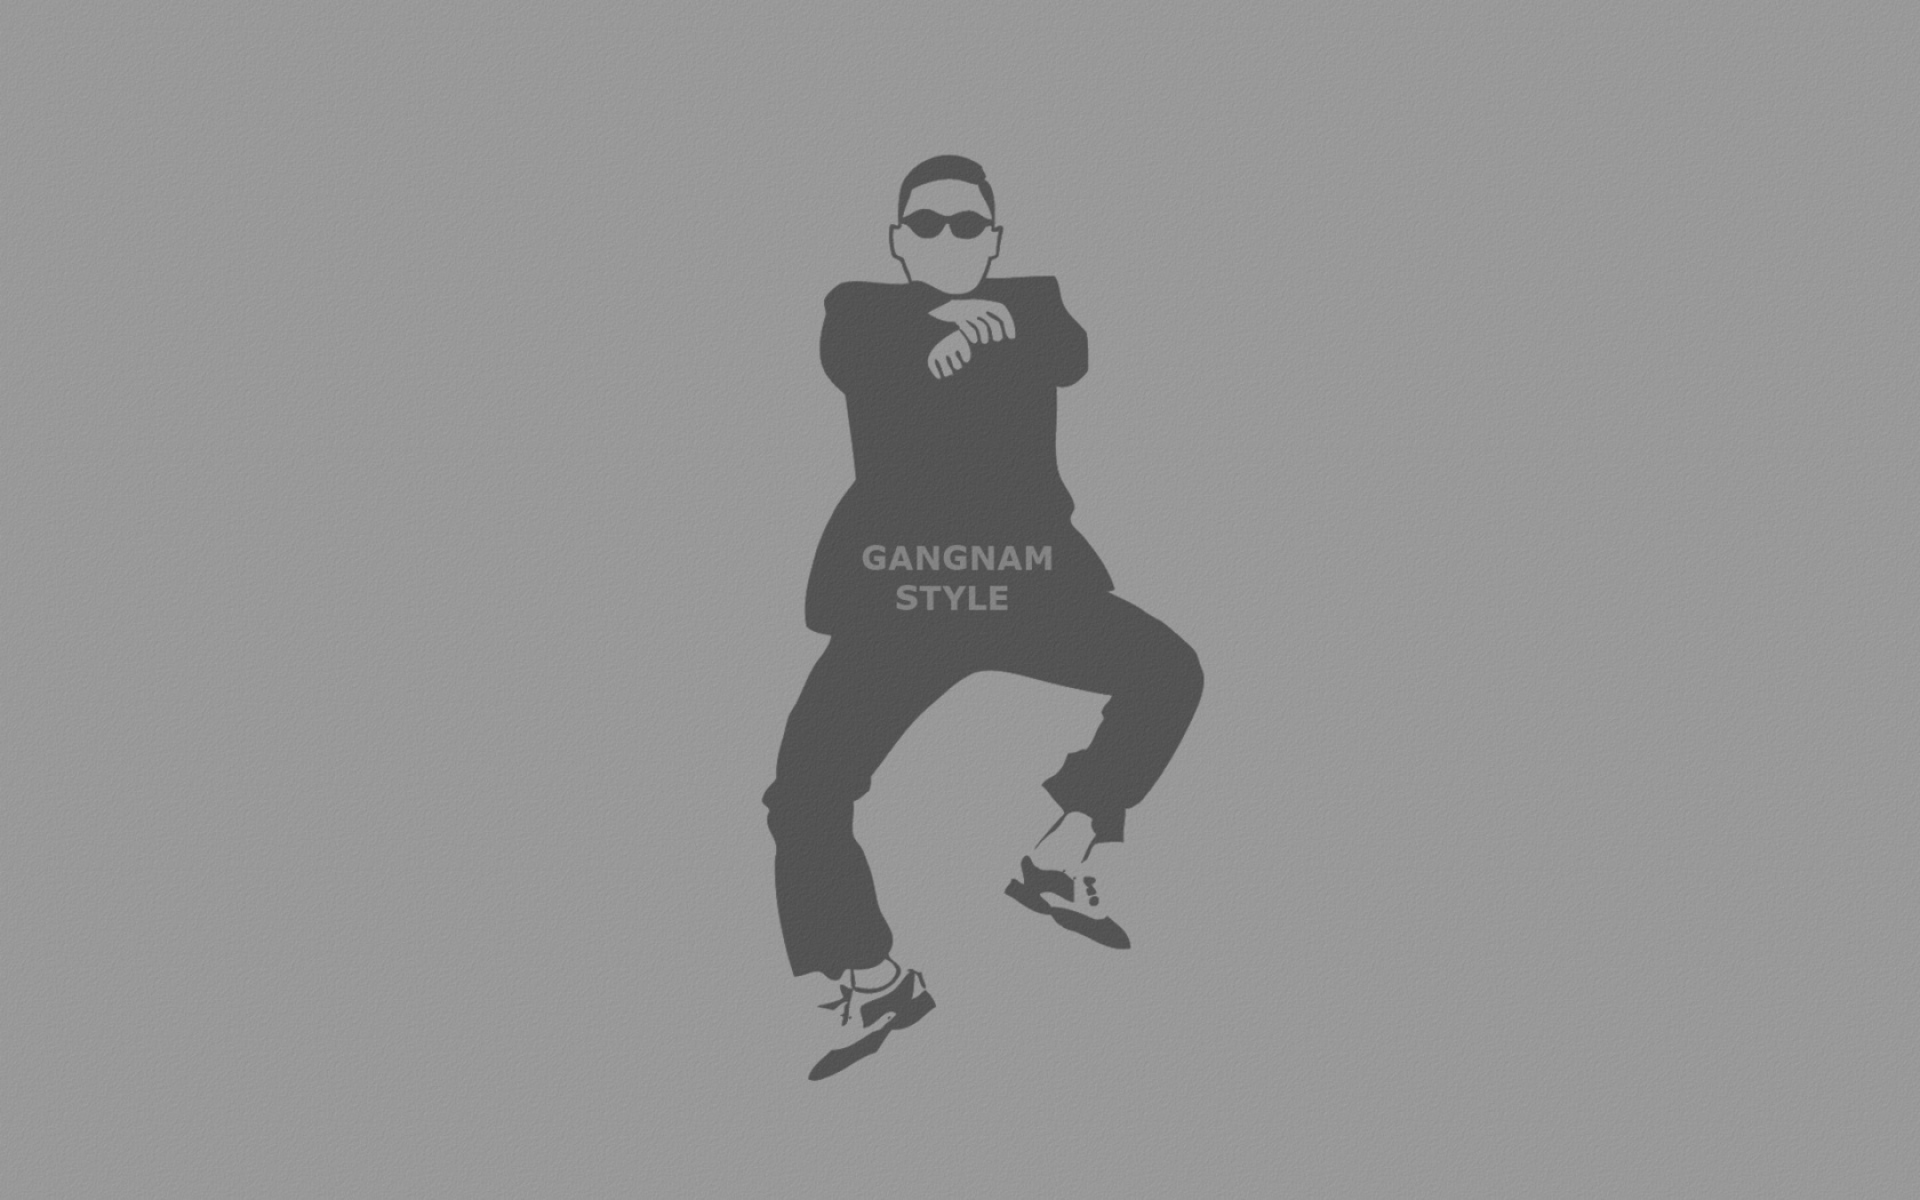 Картинки Gangnam стиль, знак, серый фон, люди, танцы, очки, psy фото и обои на рабочий стол